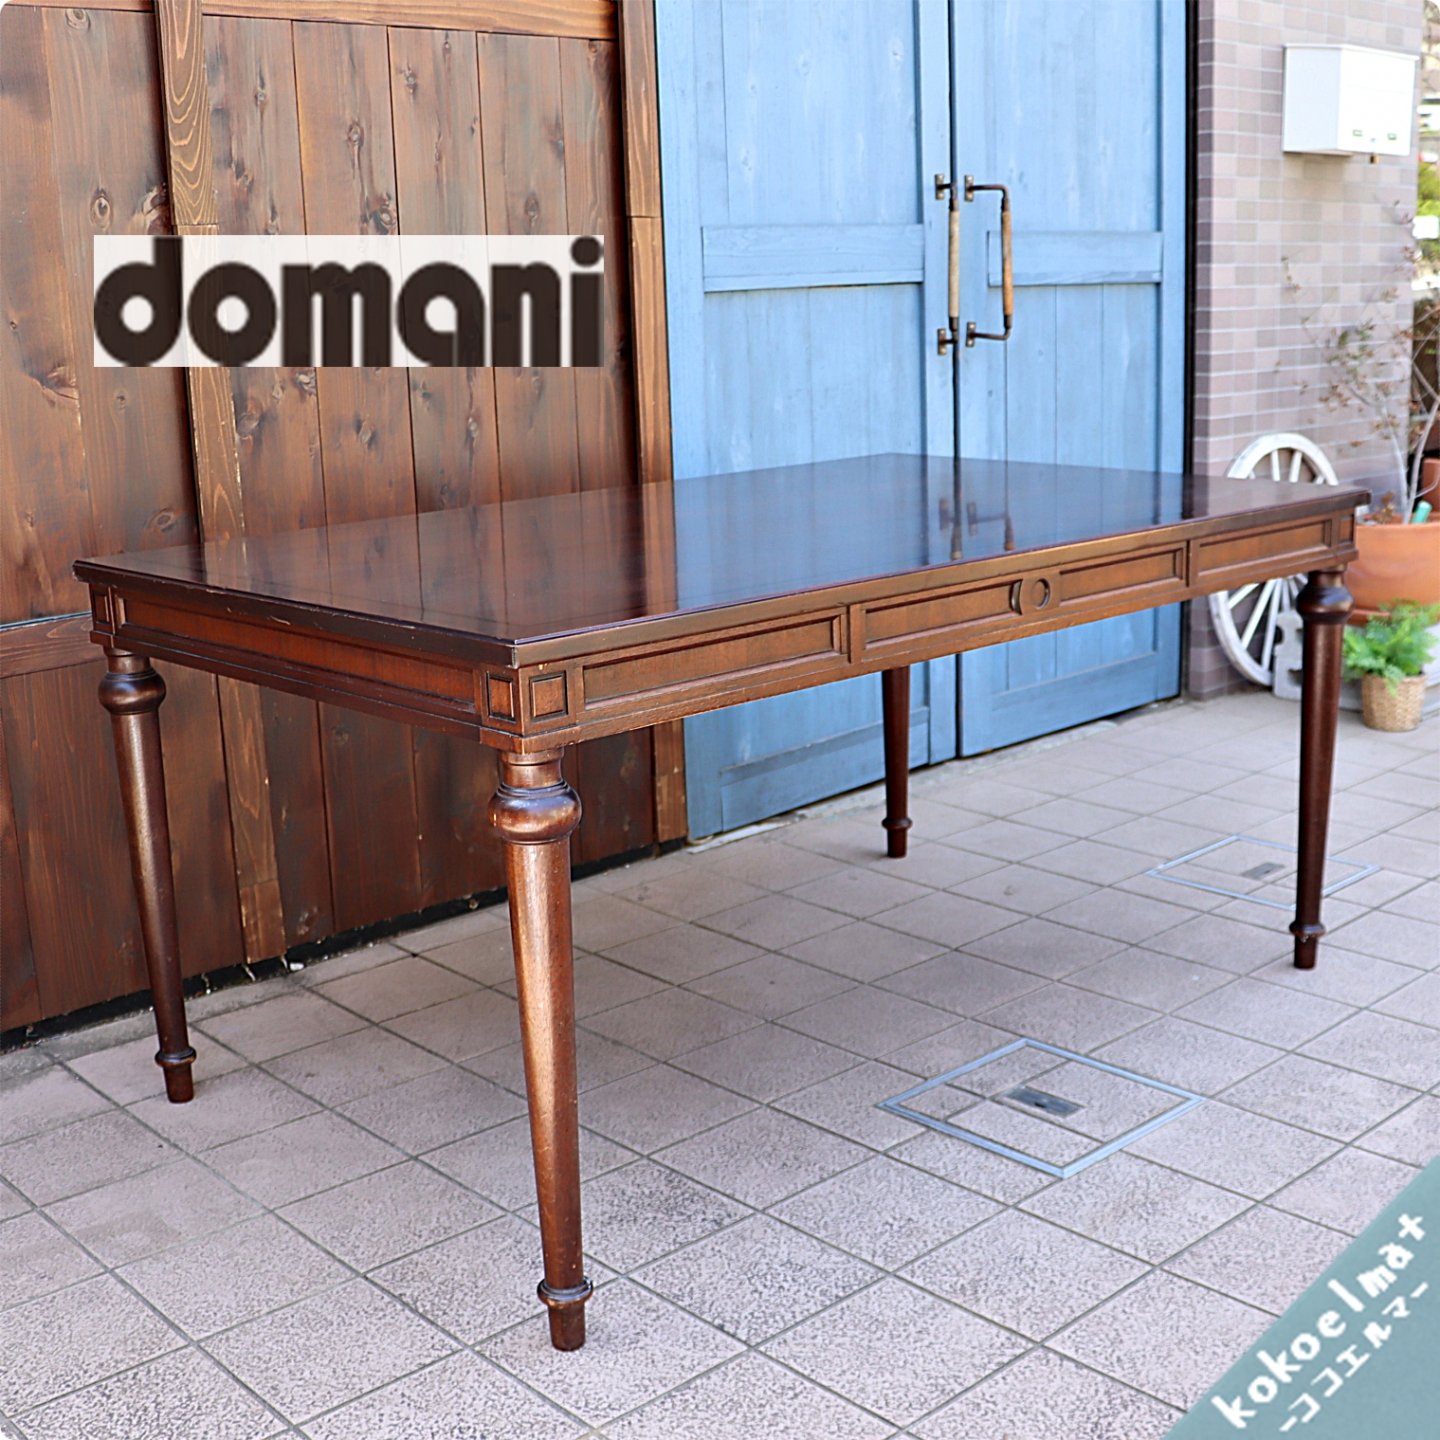 ドマーニ カリモク ダイニング テーブル 美品 - ダイニングテーブル